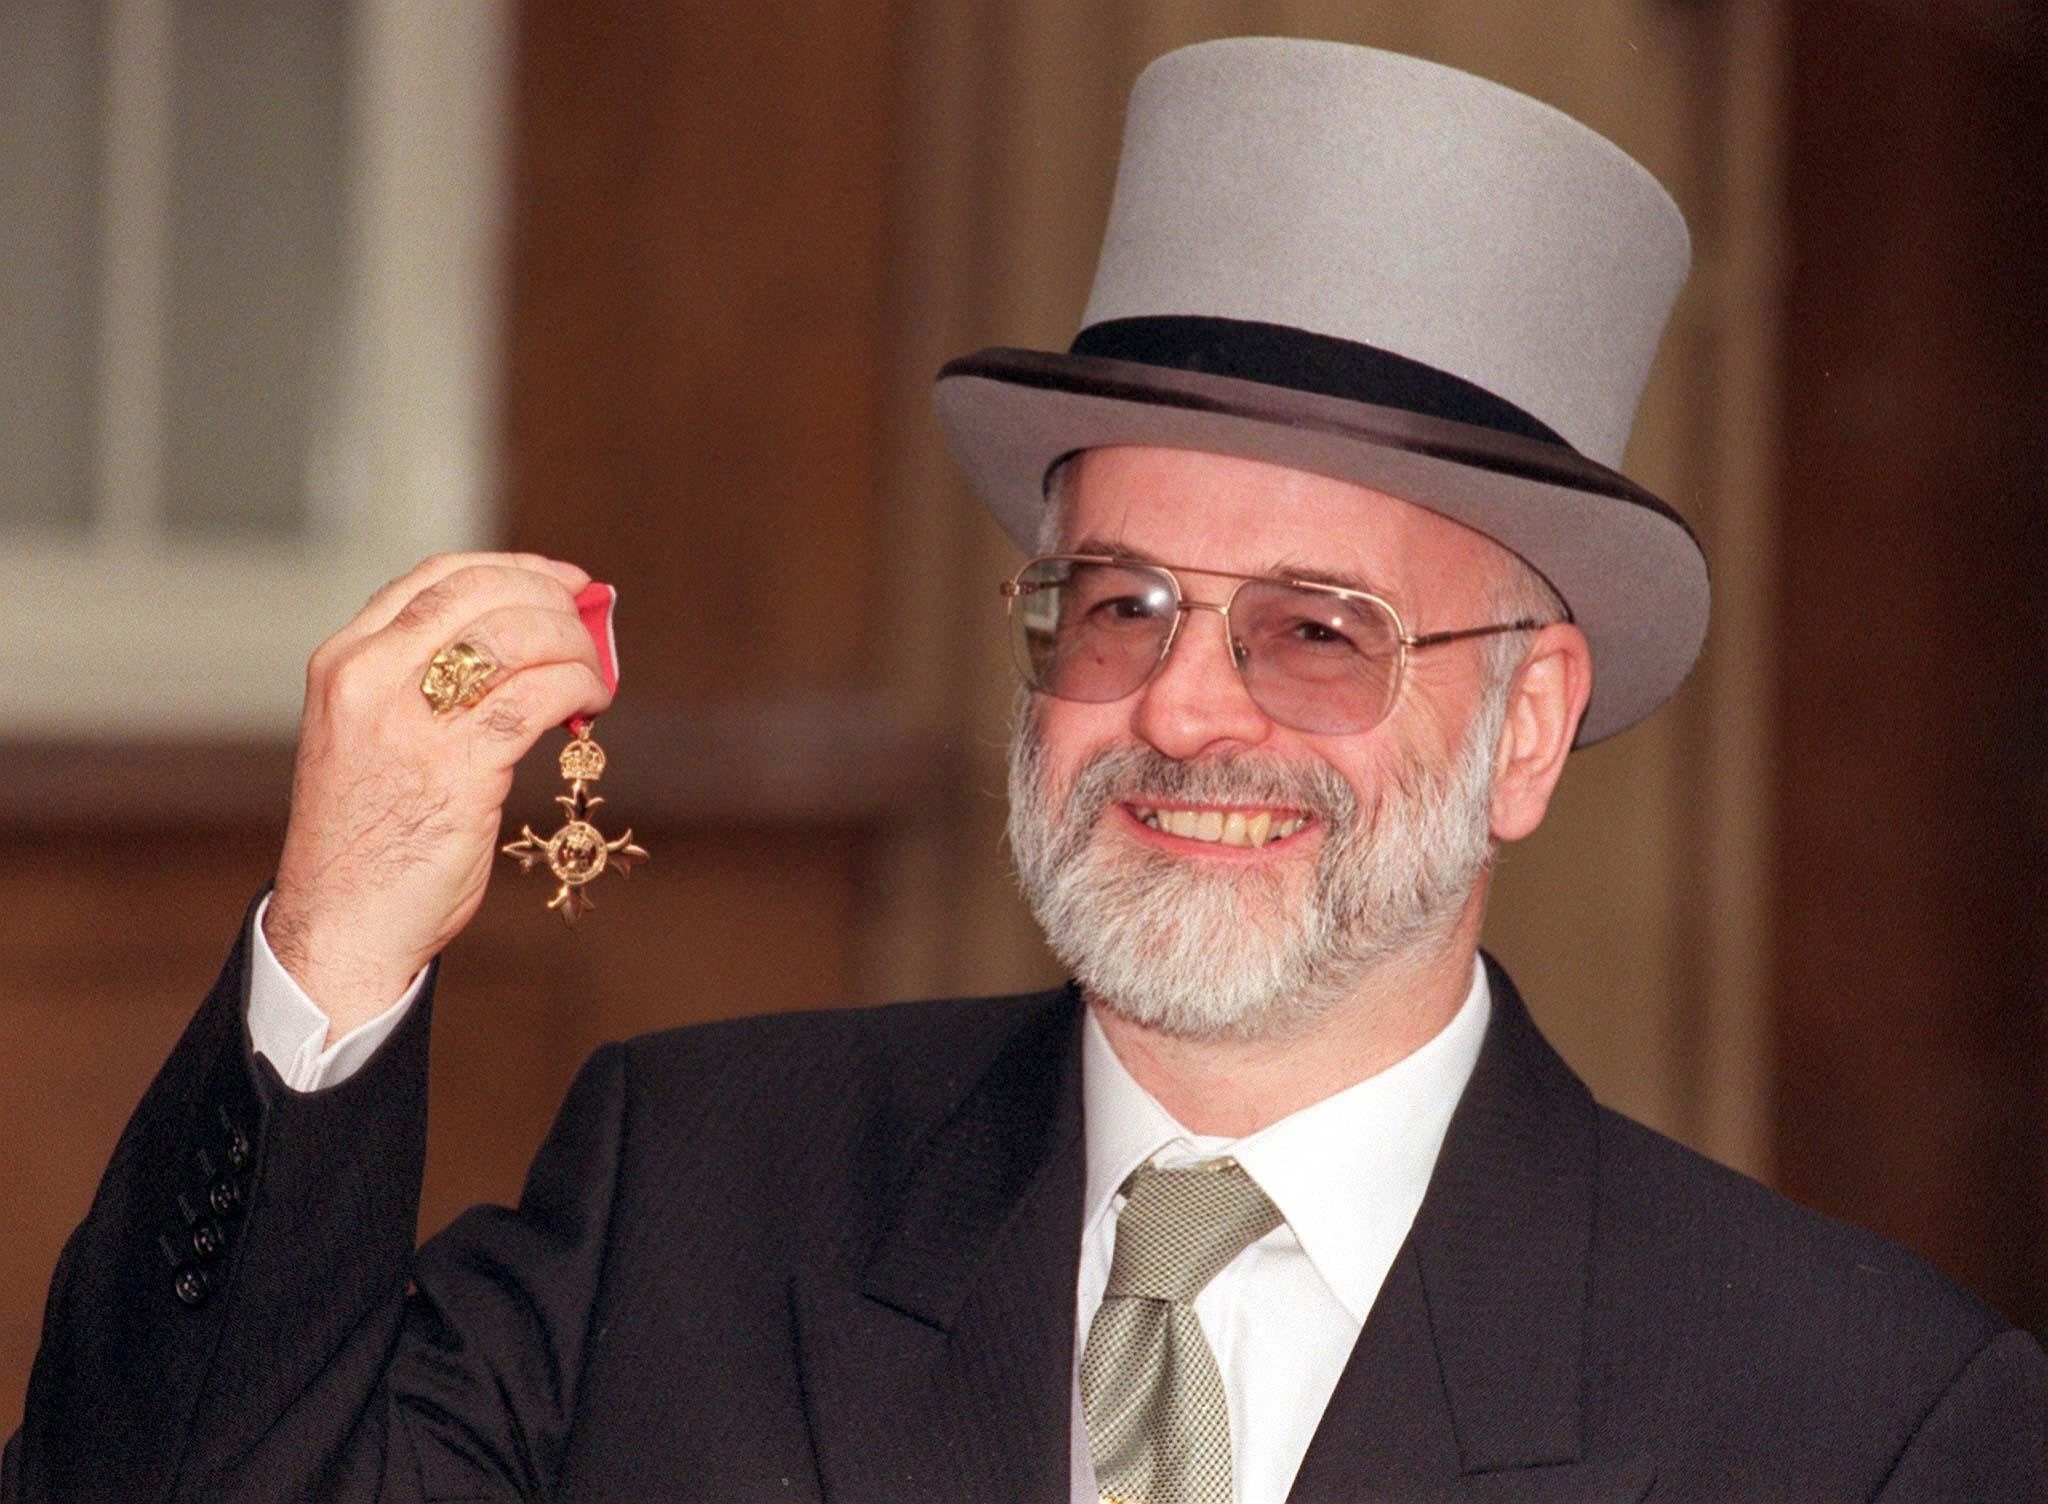 Muere Terry Pratchett tras sufrir alzheimer durante ochos años